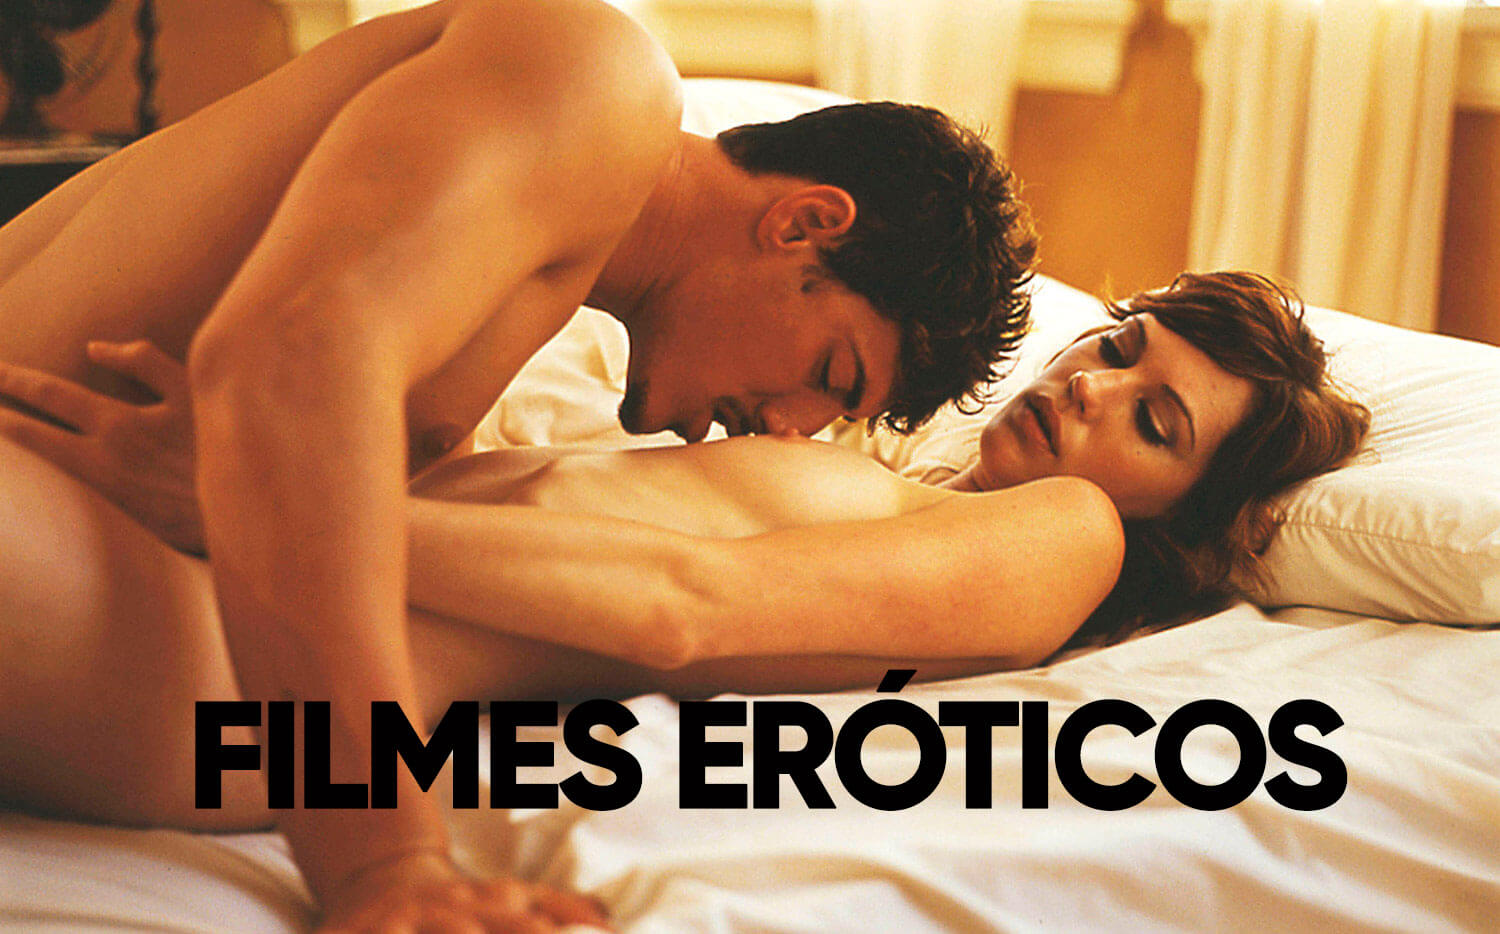 Filmes online gratis eroticos